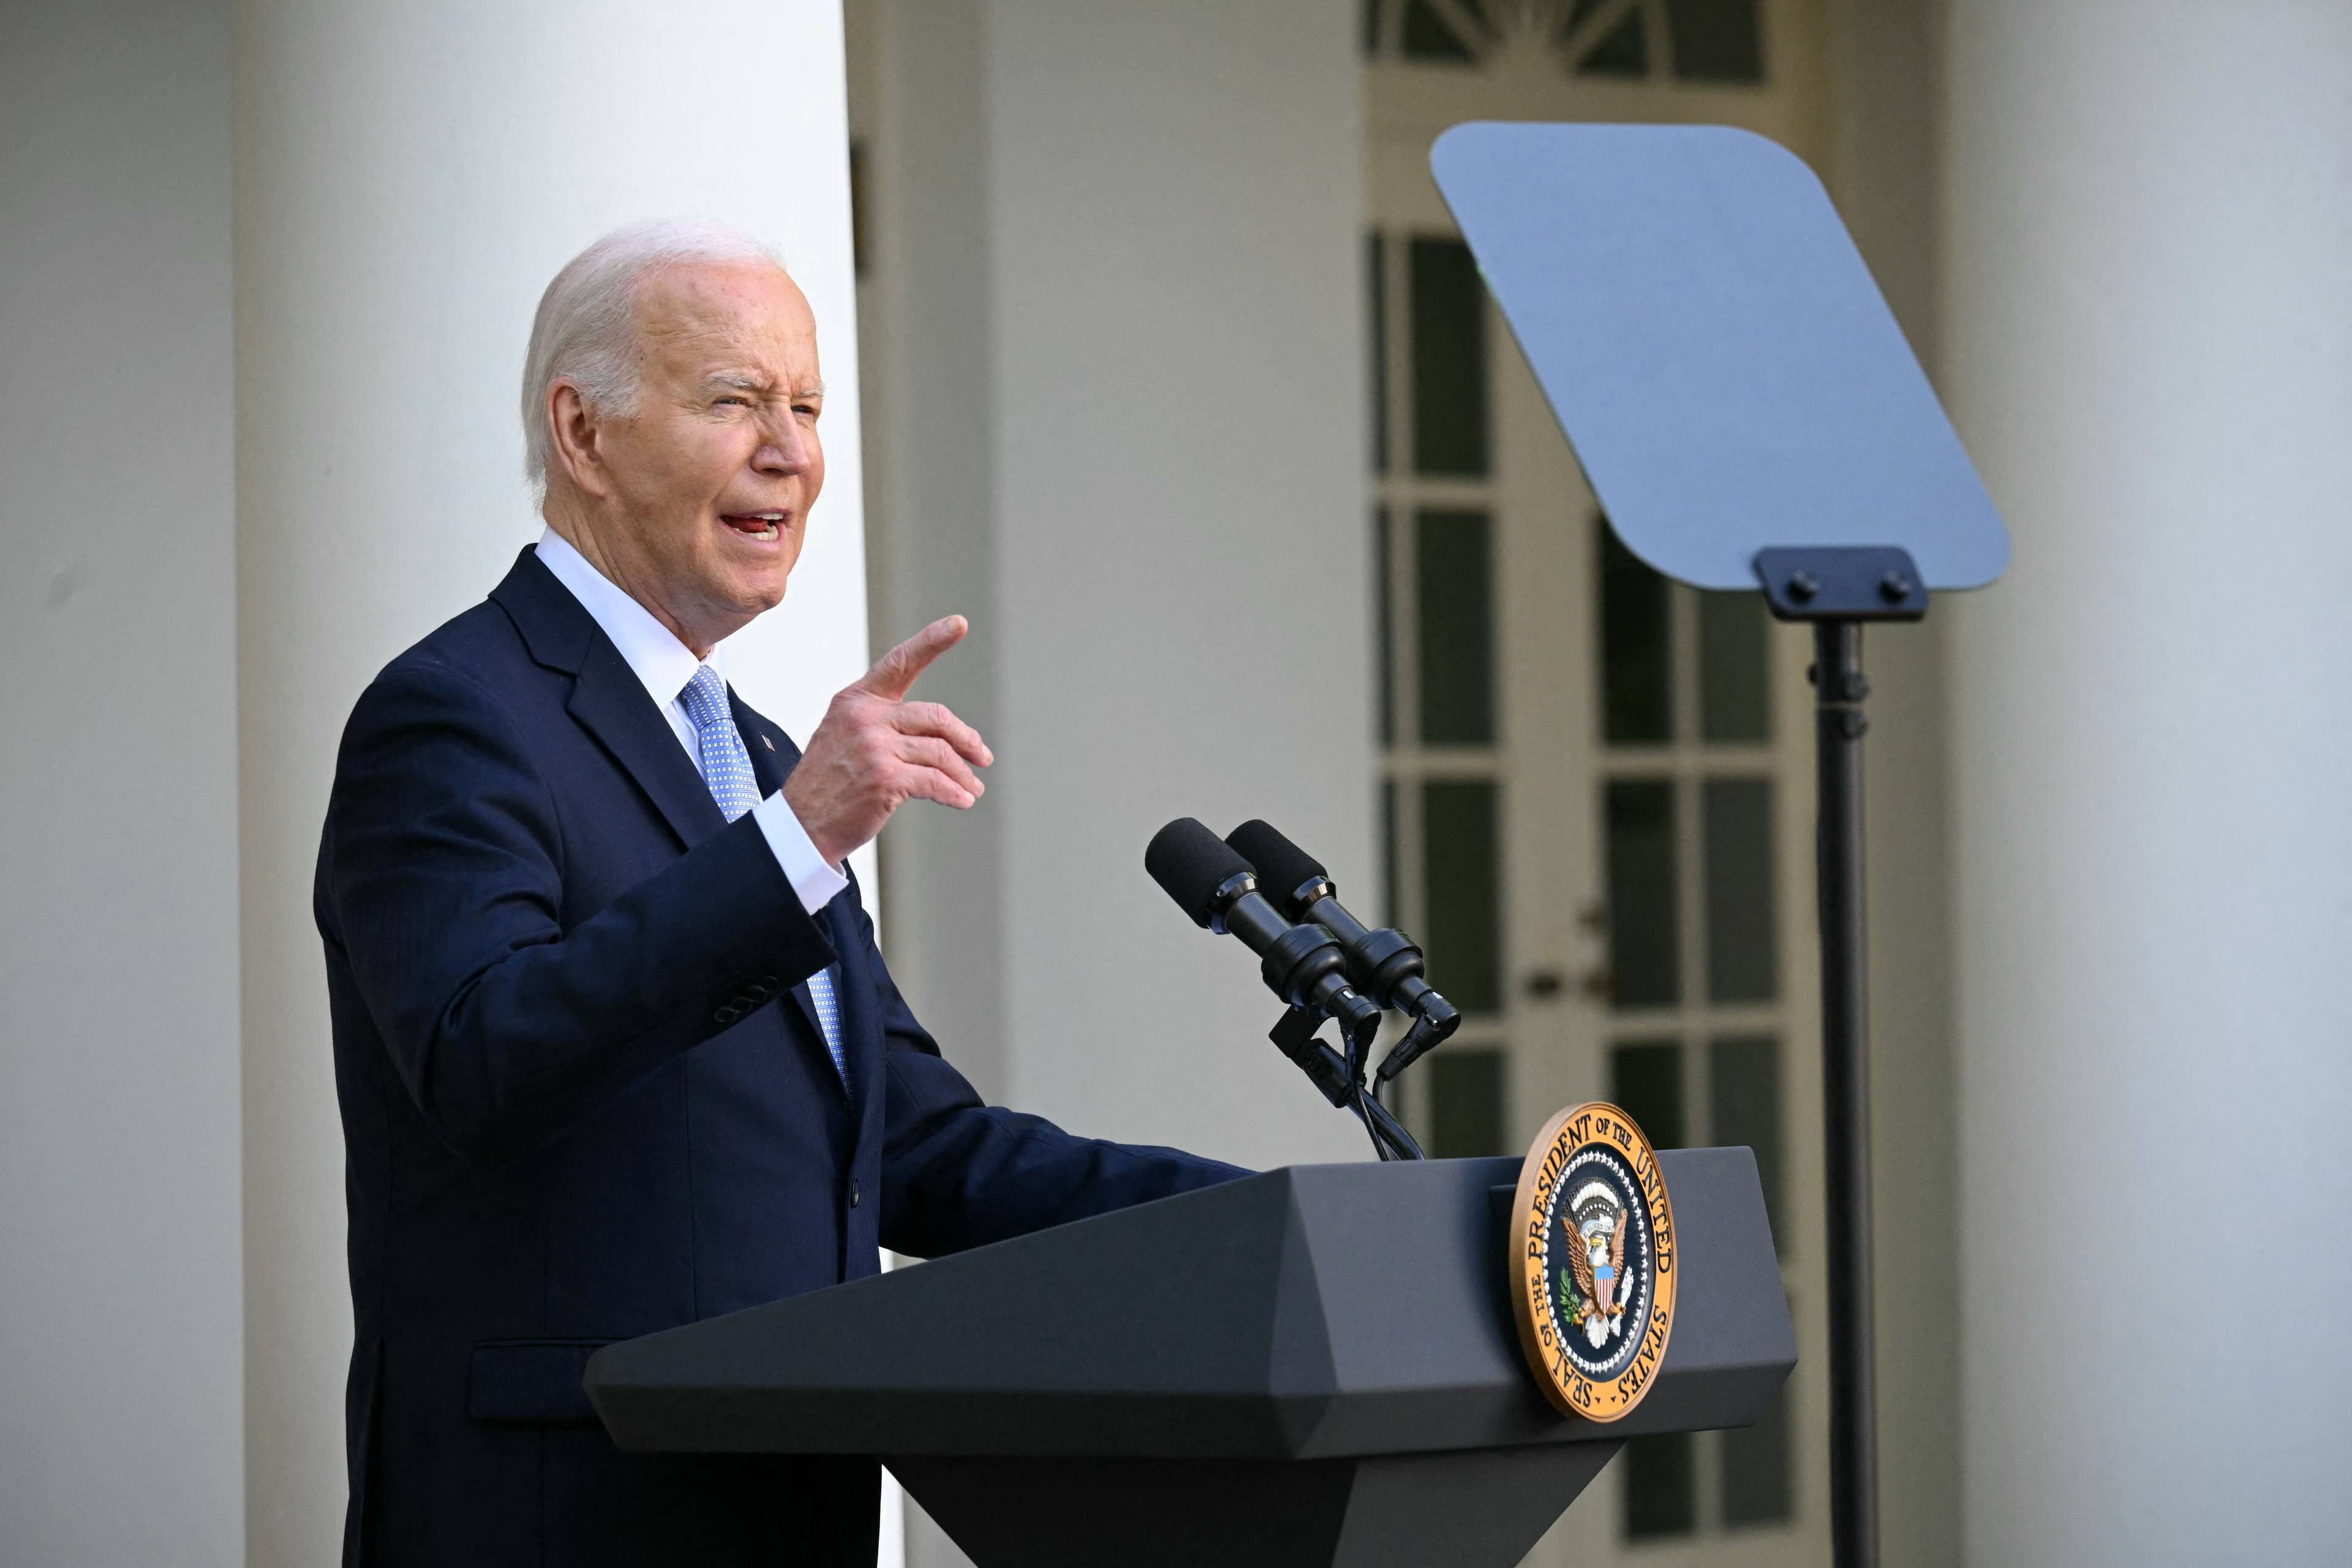 Prezydent USA Joe Biden przemawia na trawniku przed Białym Domem, patrzy w teleprompter